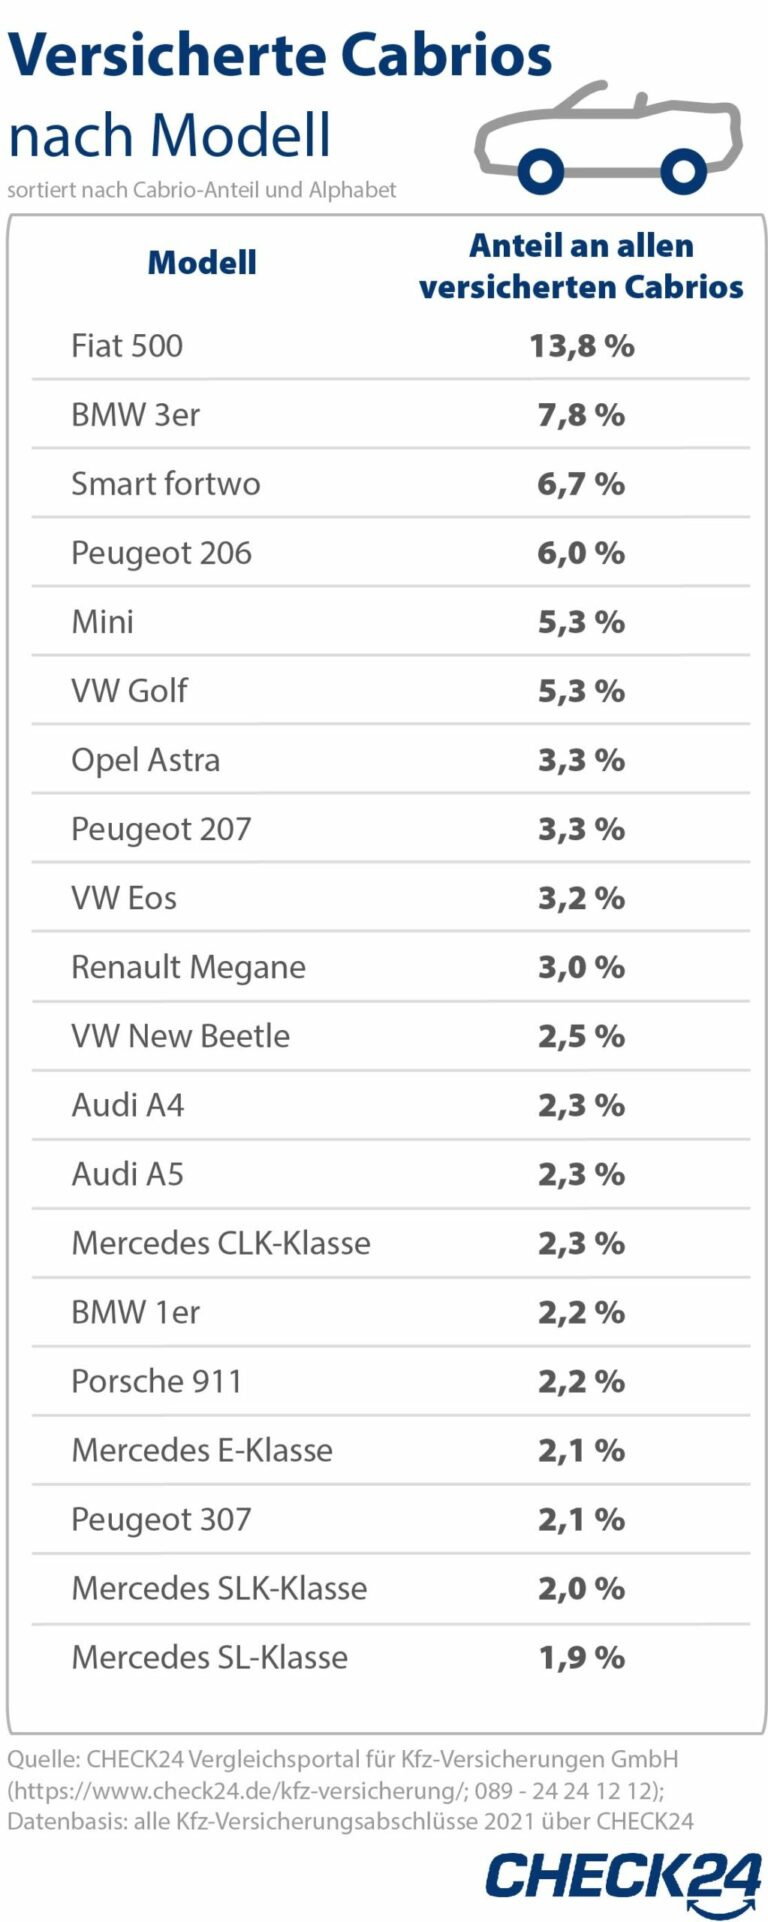 Kfz-Versicherung: Der Fiat 500 ist das beliebteste Cabrio